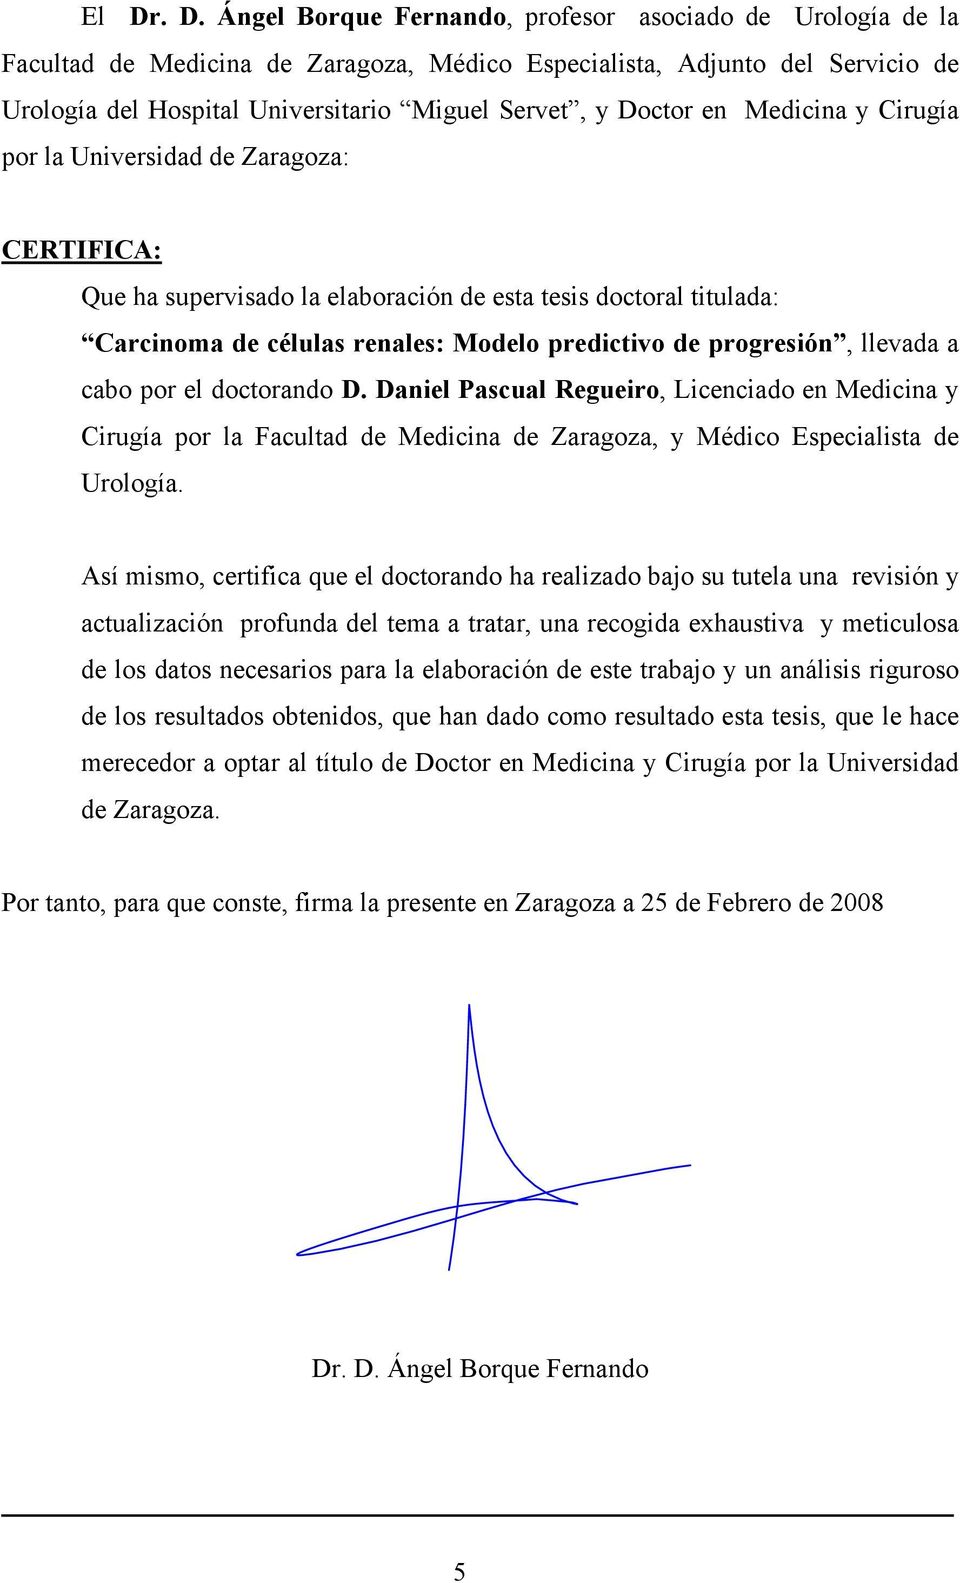 progresión, llevada a cabo por el doctorando D. Daniel Pascual Regueiro, Licenciado en Medicina y Cirugía por la Facultad de Medicina de Zaragoza, y Médico Especialista de Urología.